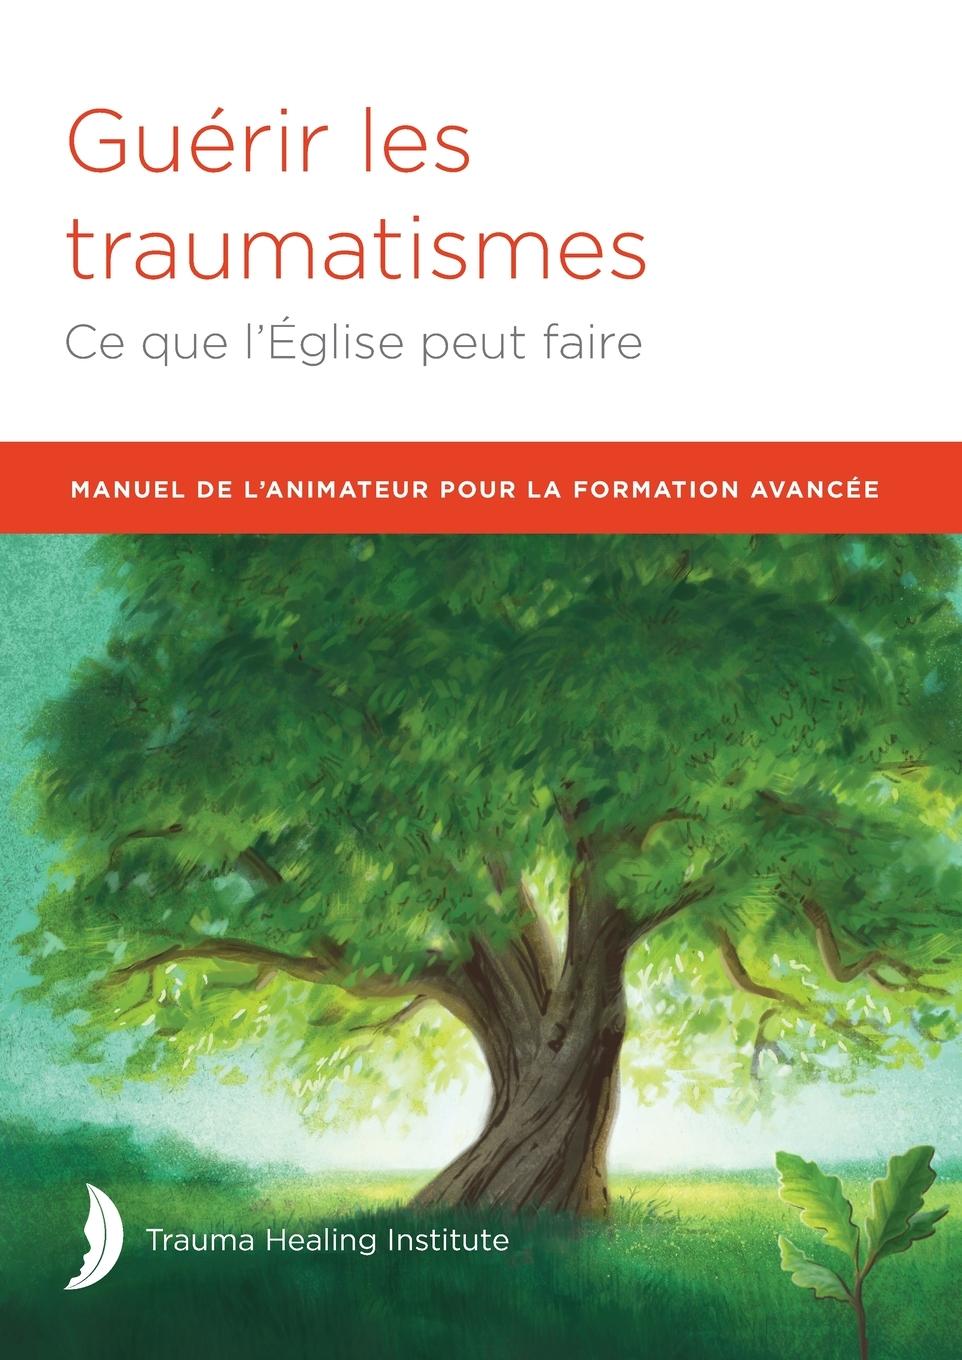 Kniha MANUEL DE L'ANIMATEUR POUR LA FORMATION AVANCÉE Richard Baggé